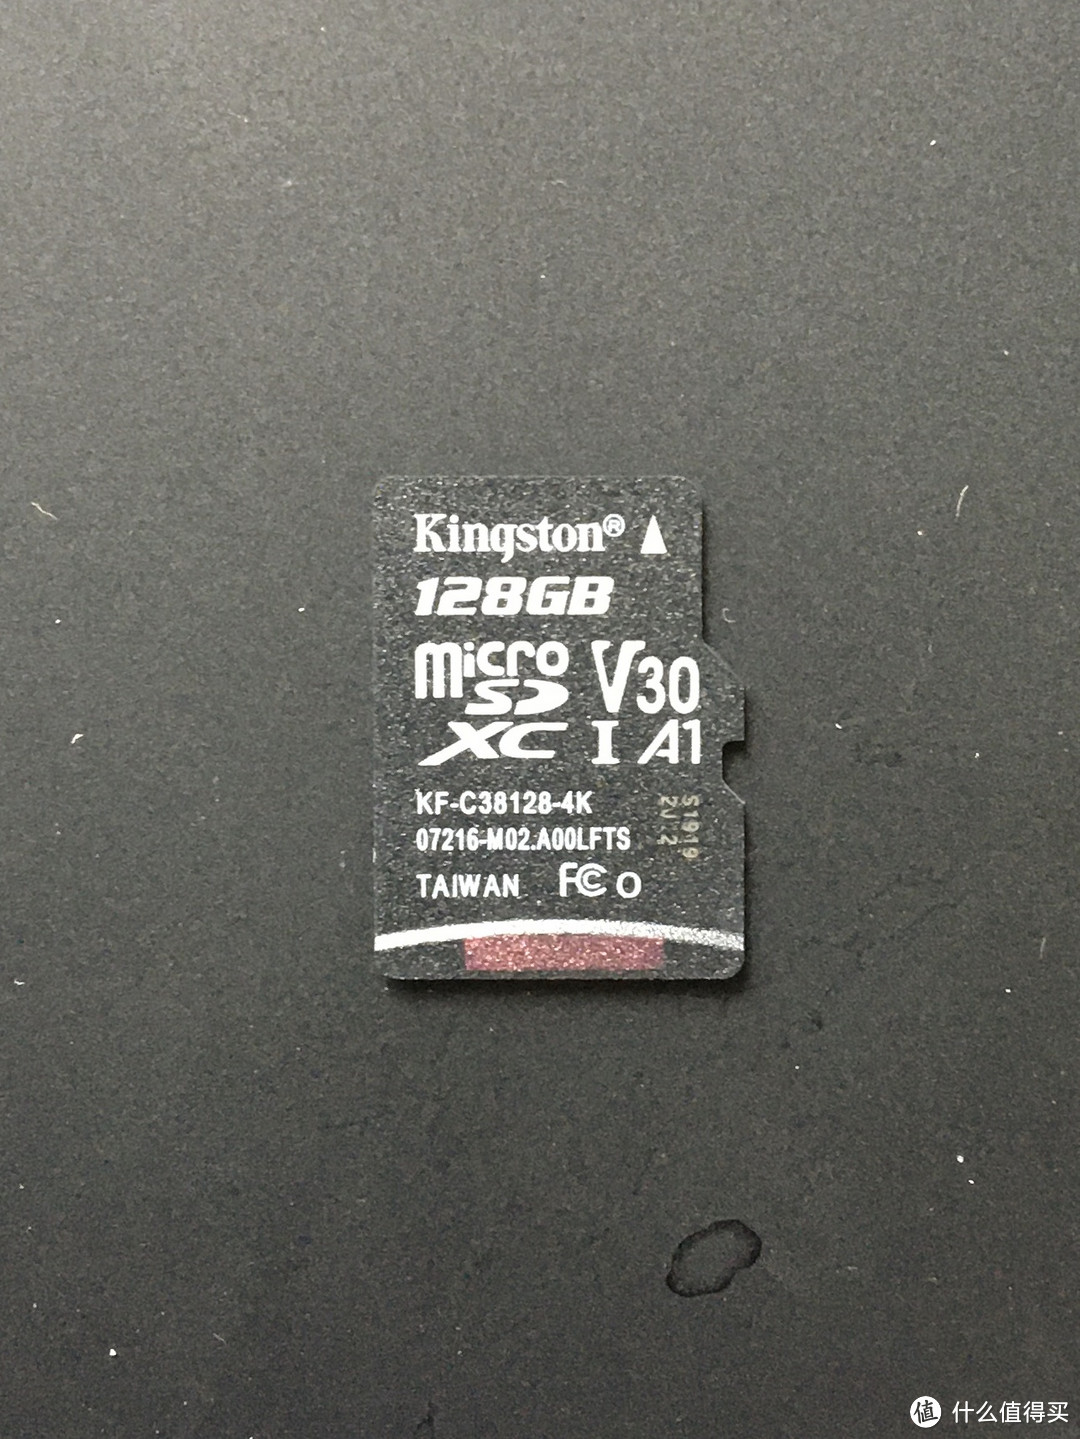 图书馆猿の“零元购”的金士顿(Kingston)128GB TF(MicroSD)存储卡